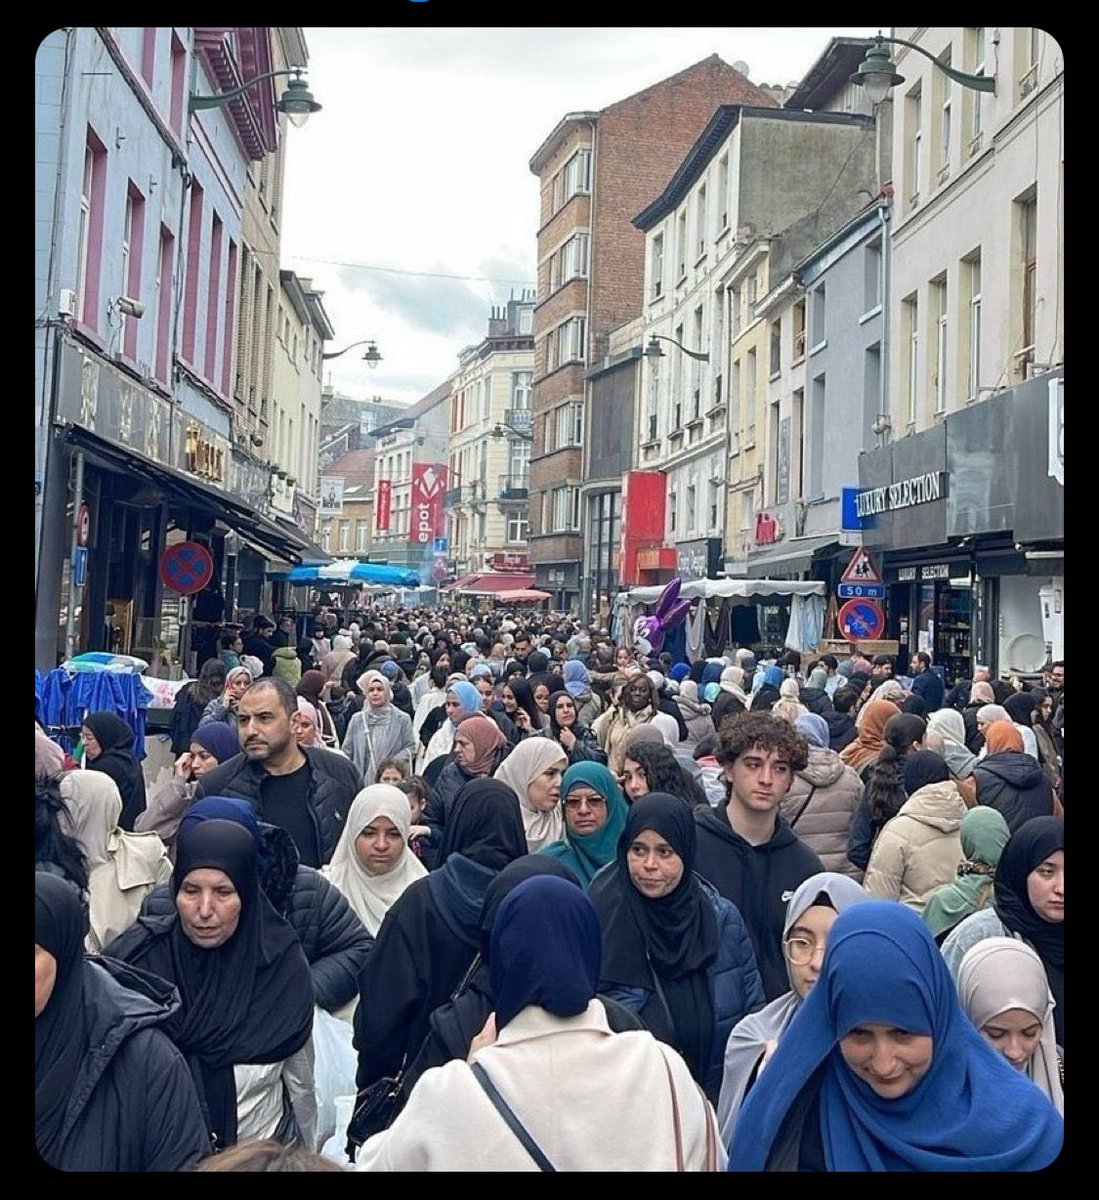 Esta fotografía fue tomada en Molenbeek, #Brussels .

La imagen se volvió viral en las redes sociales por parte de iraníes que escribieron 'en las calles de Bruselas hay más mujeres usando Hijab que en las de Irán'.

Están asombrados de que en Irán, niñas y mujeres jóvenes